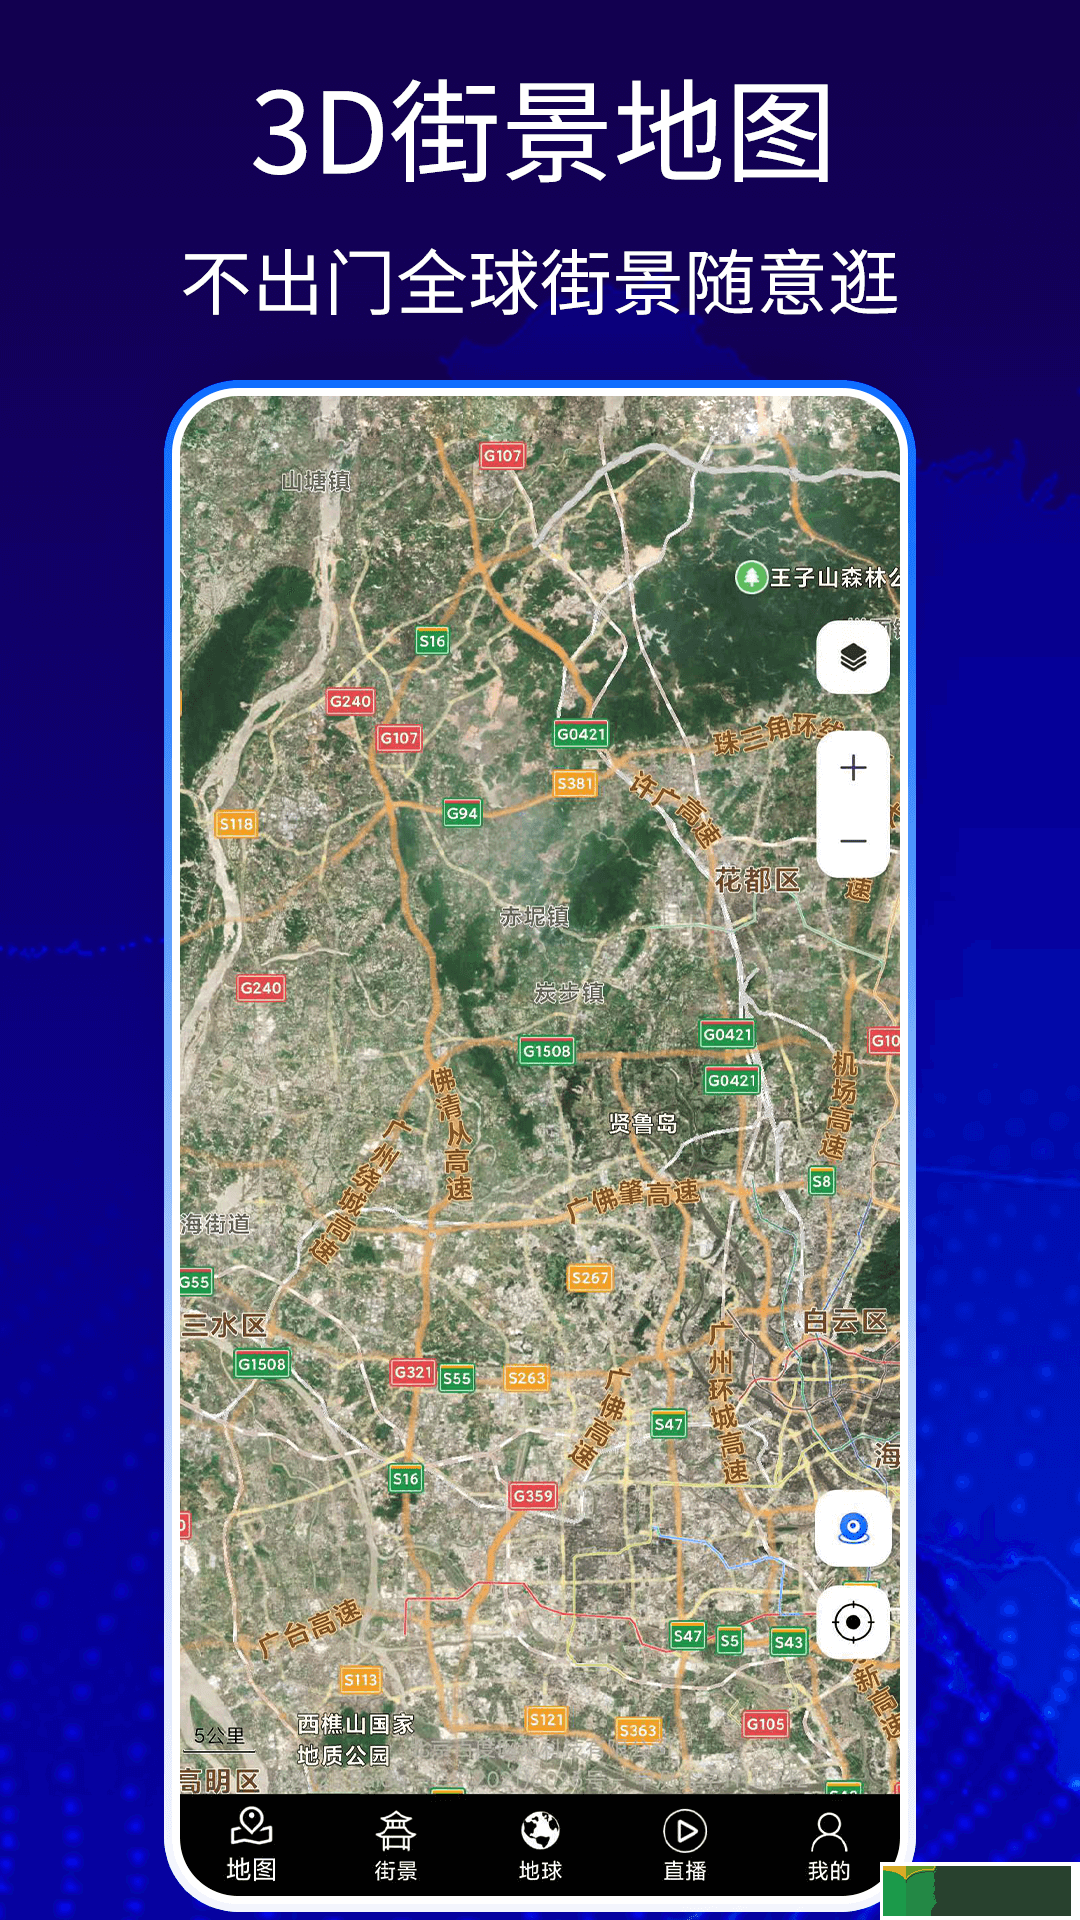 奥维3d高清卫星高清地图下载地址